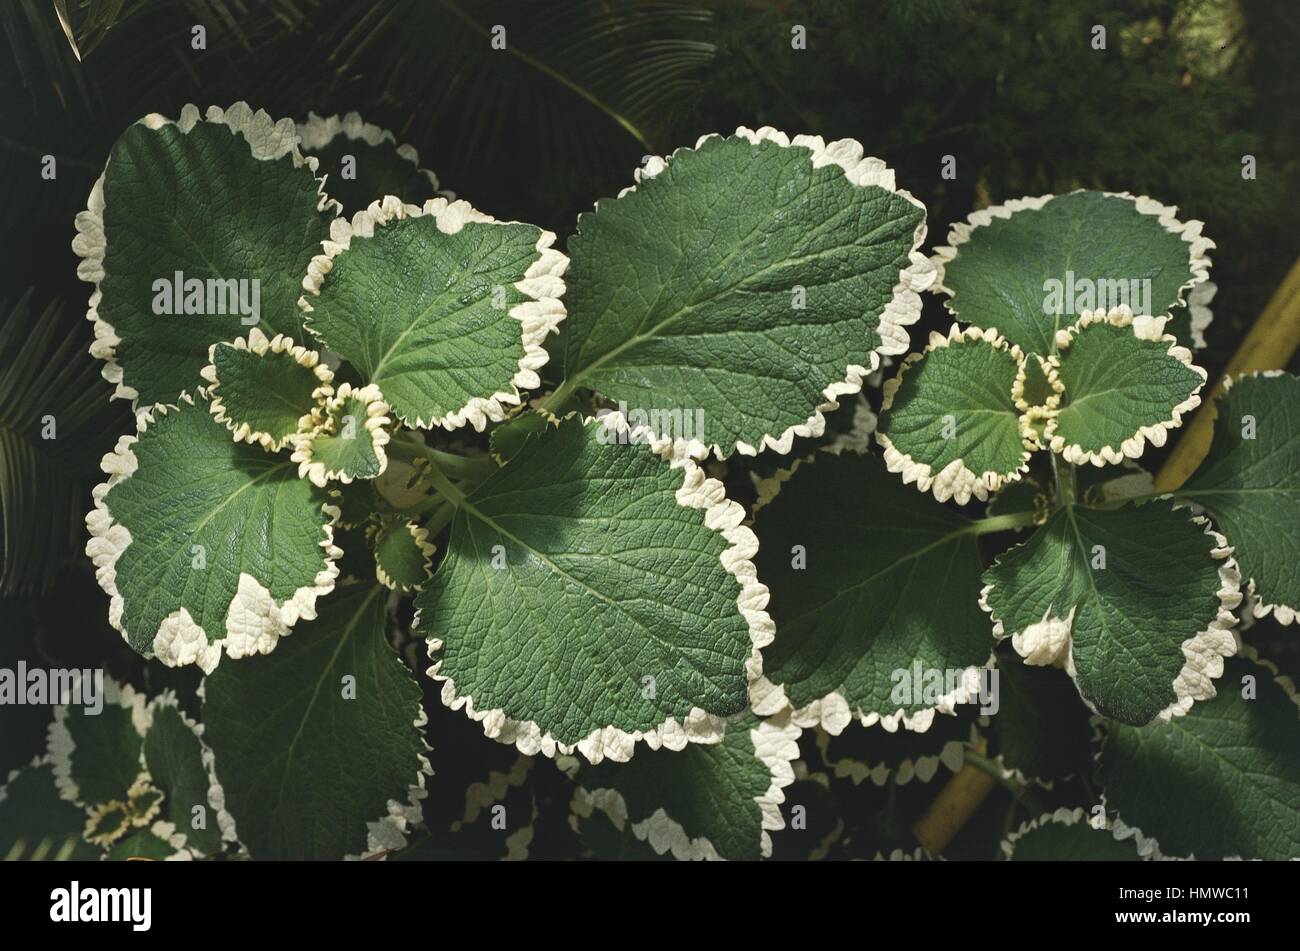 Botany - Lamiaceae or Labiatae - White-edged Swedish Ivy (Plectranthus coleoides) Stock Photo